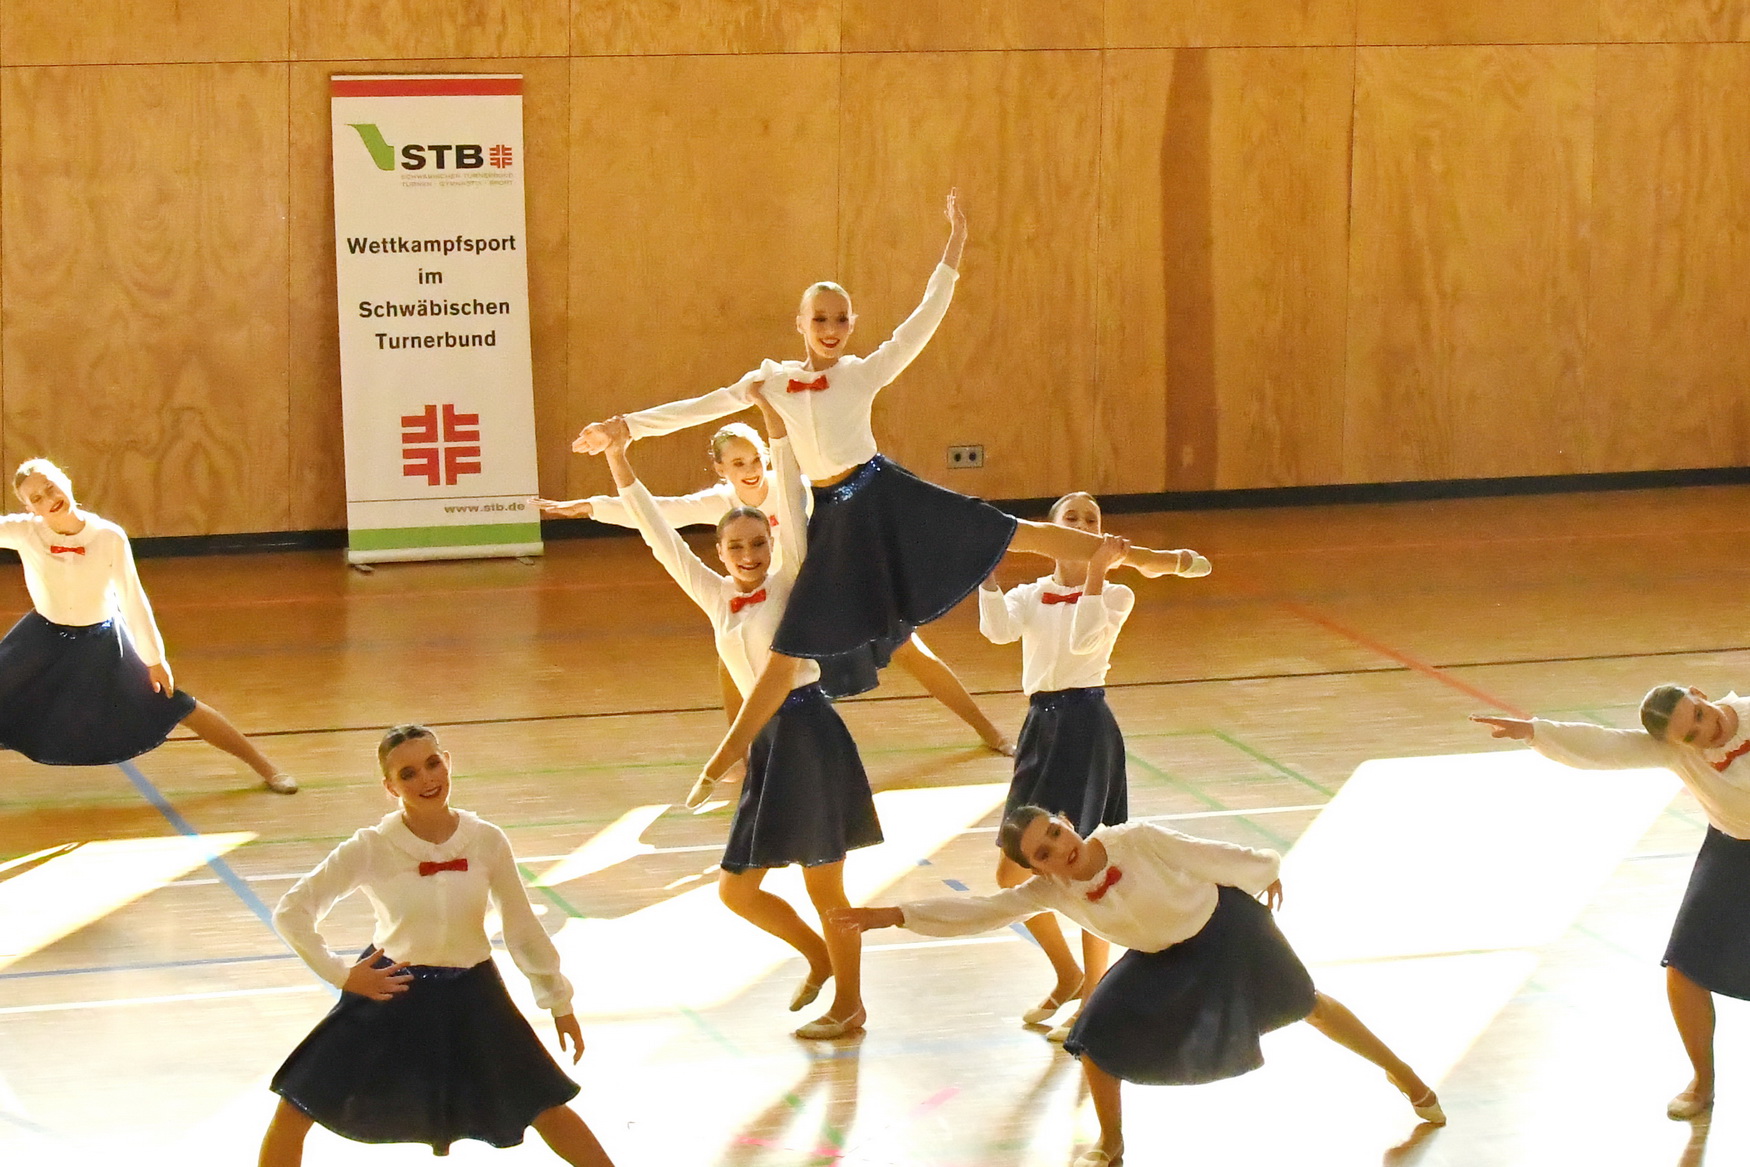 DanceOlution qualifiziert sich für das Finale des STB/BTB-Cup Dance